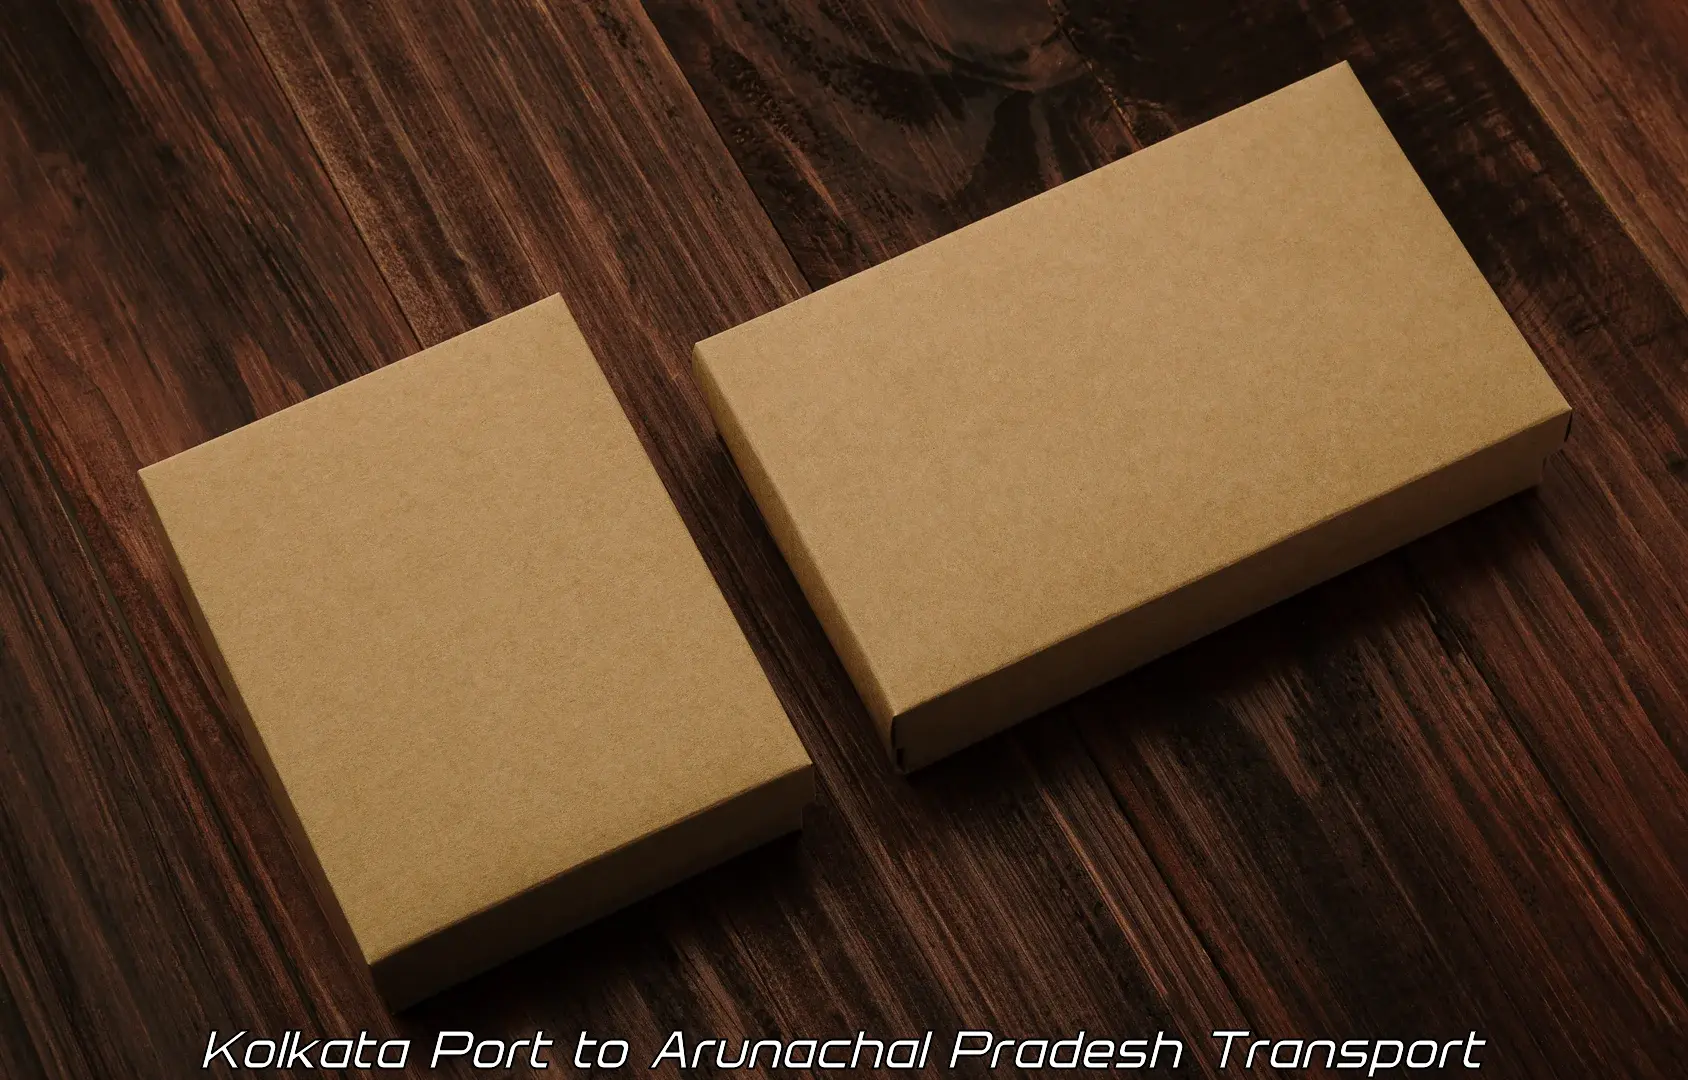 Two wheeler parcel service Kolkata Port to Bomdila